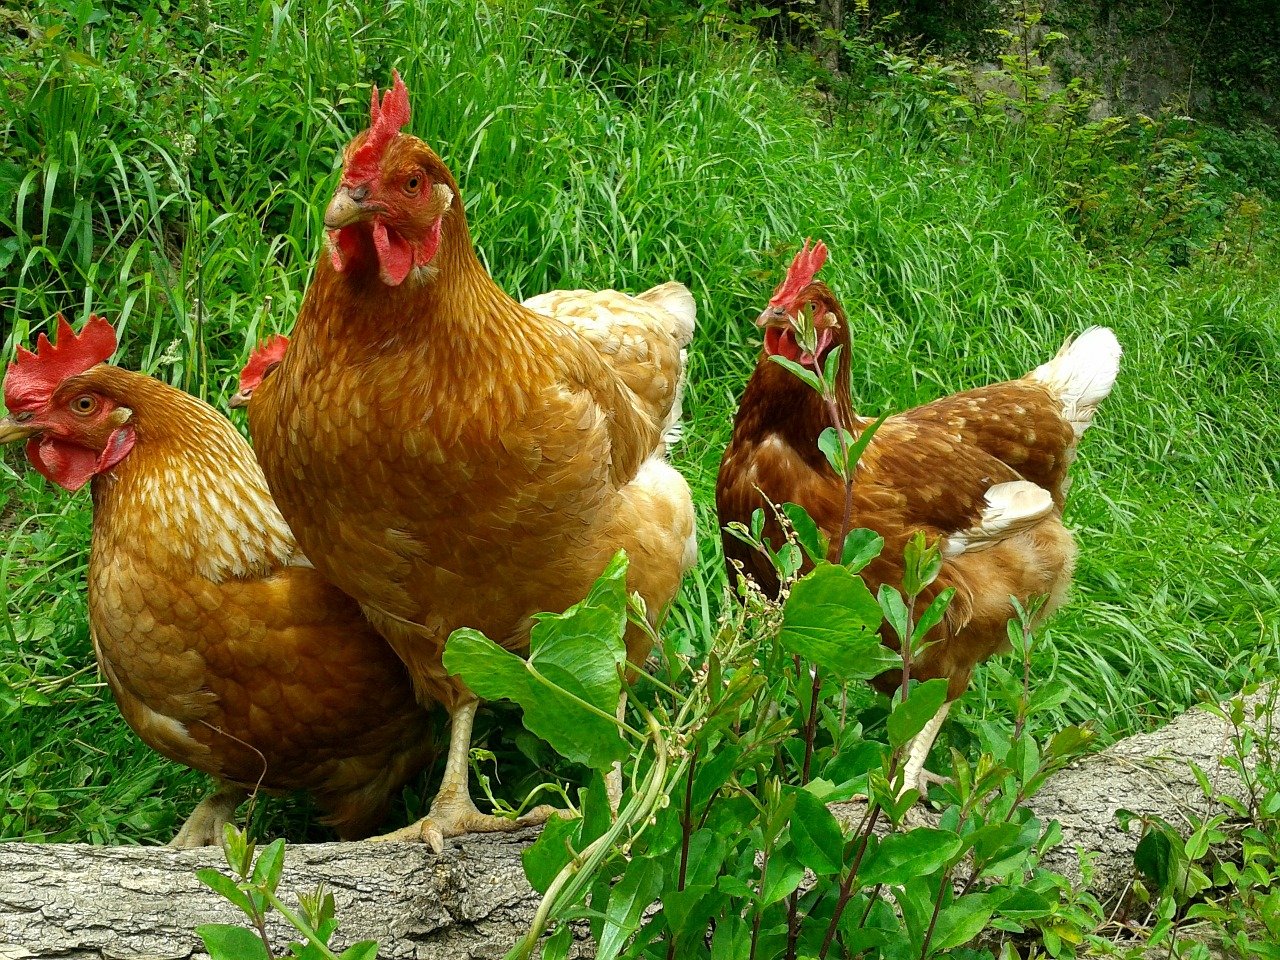 Породы домашних кур – фото и описание ТОП-10 несушек